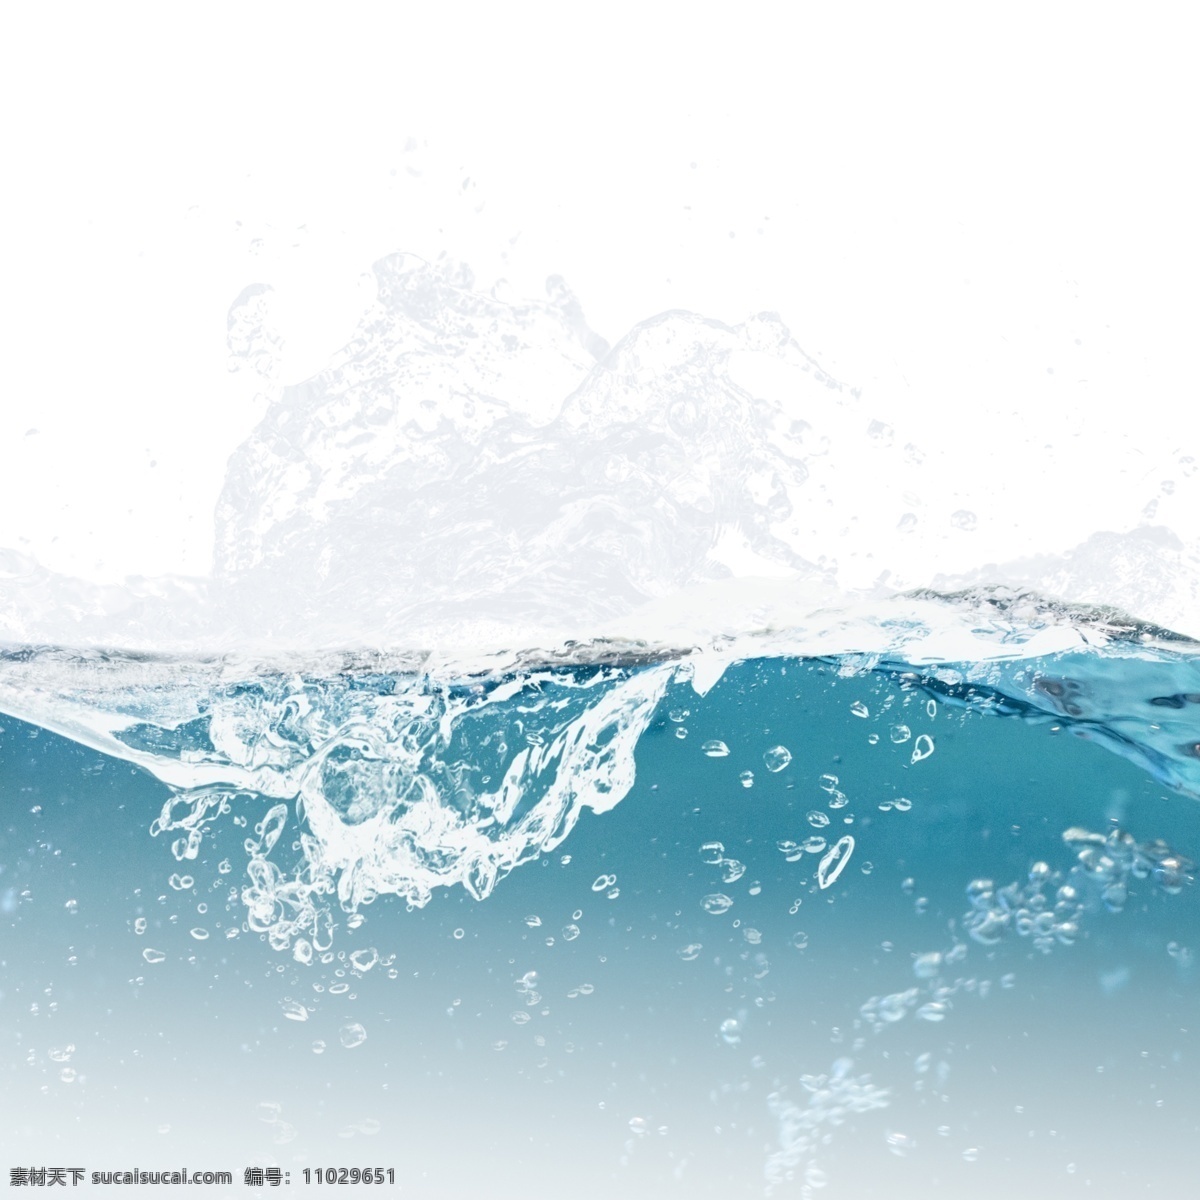 蓝色 水面 喷溅 水花 元素 气泡 浪花 蓝色水面 海浪 喷溅的水花 水效果 动感水花 水波 水滴 水泡 动感水纹